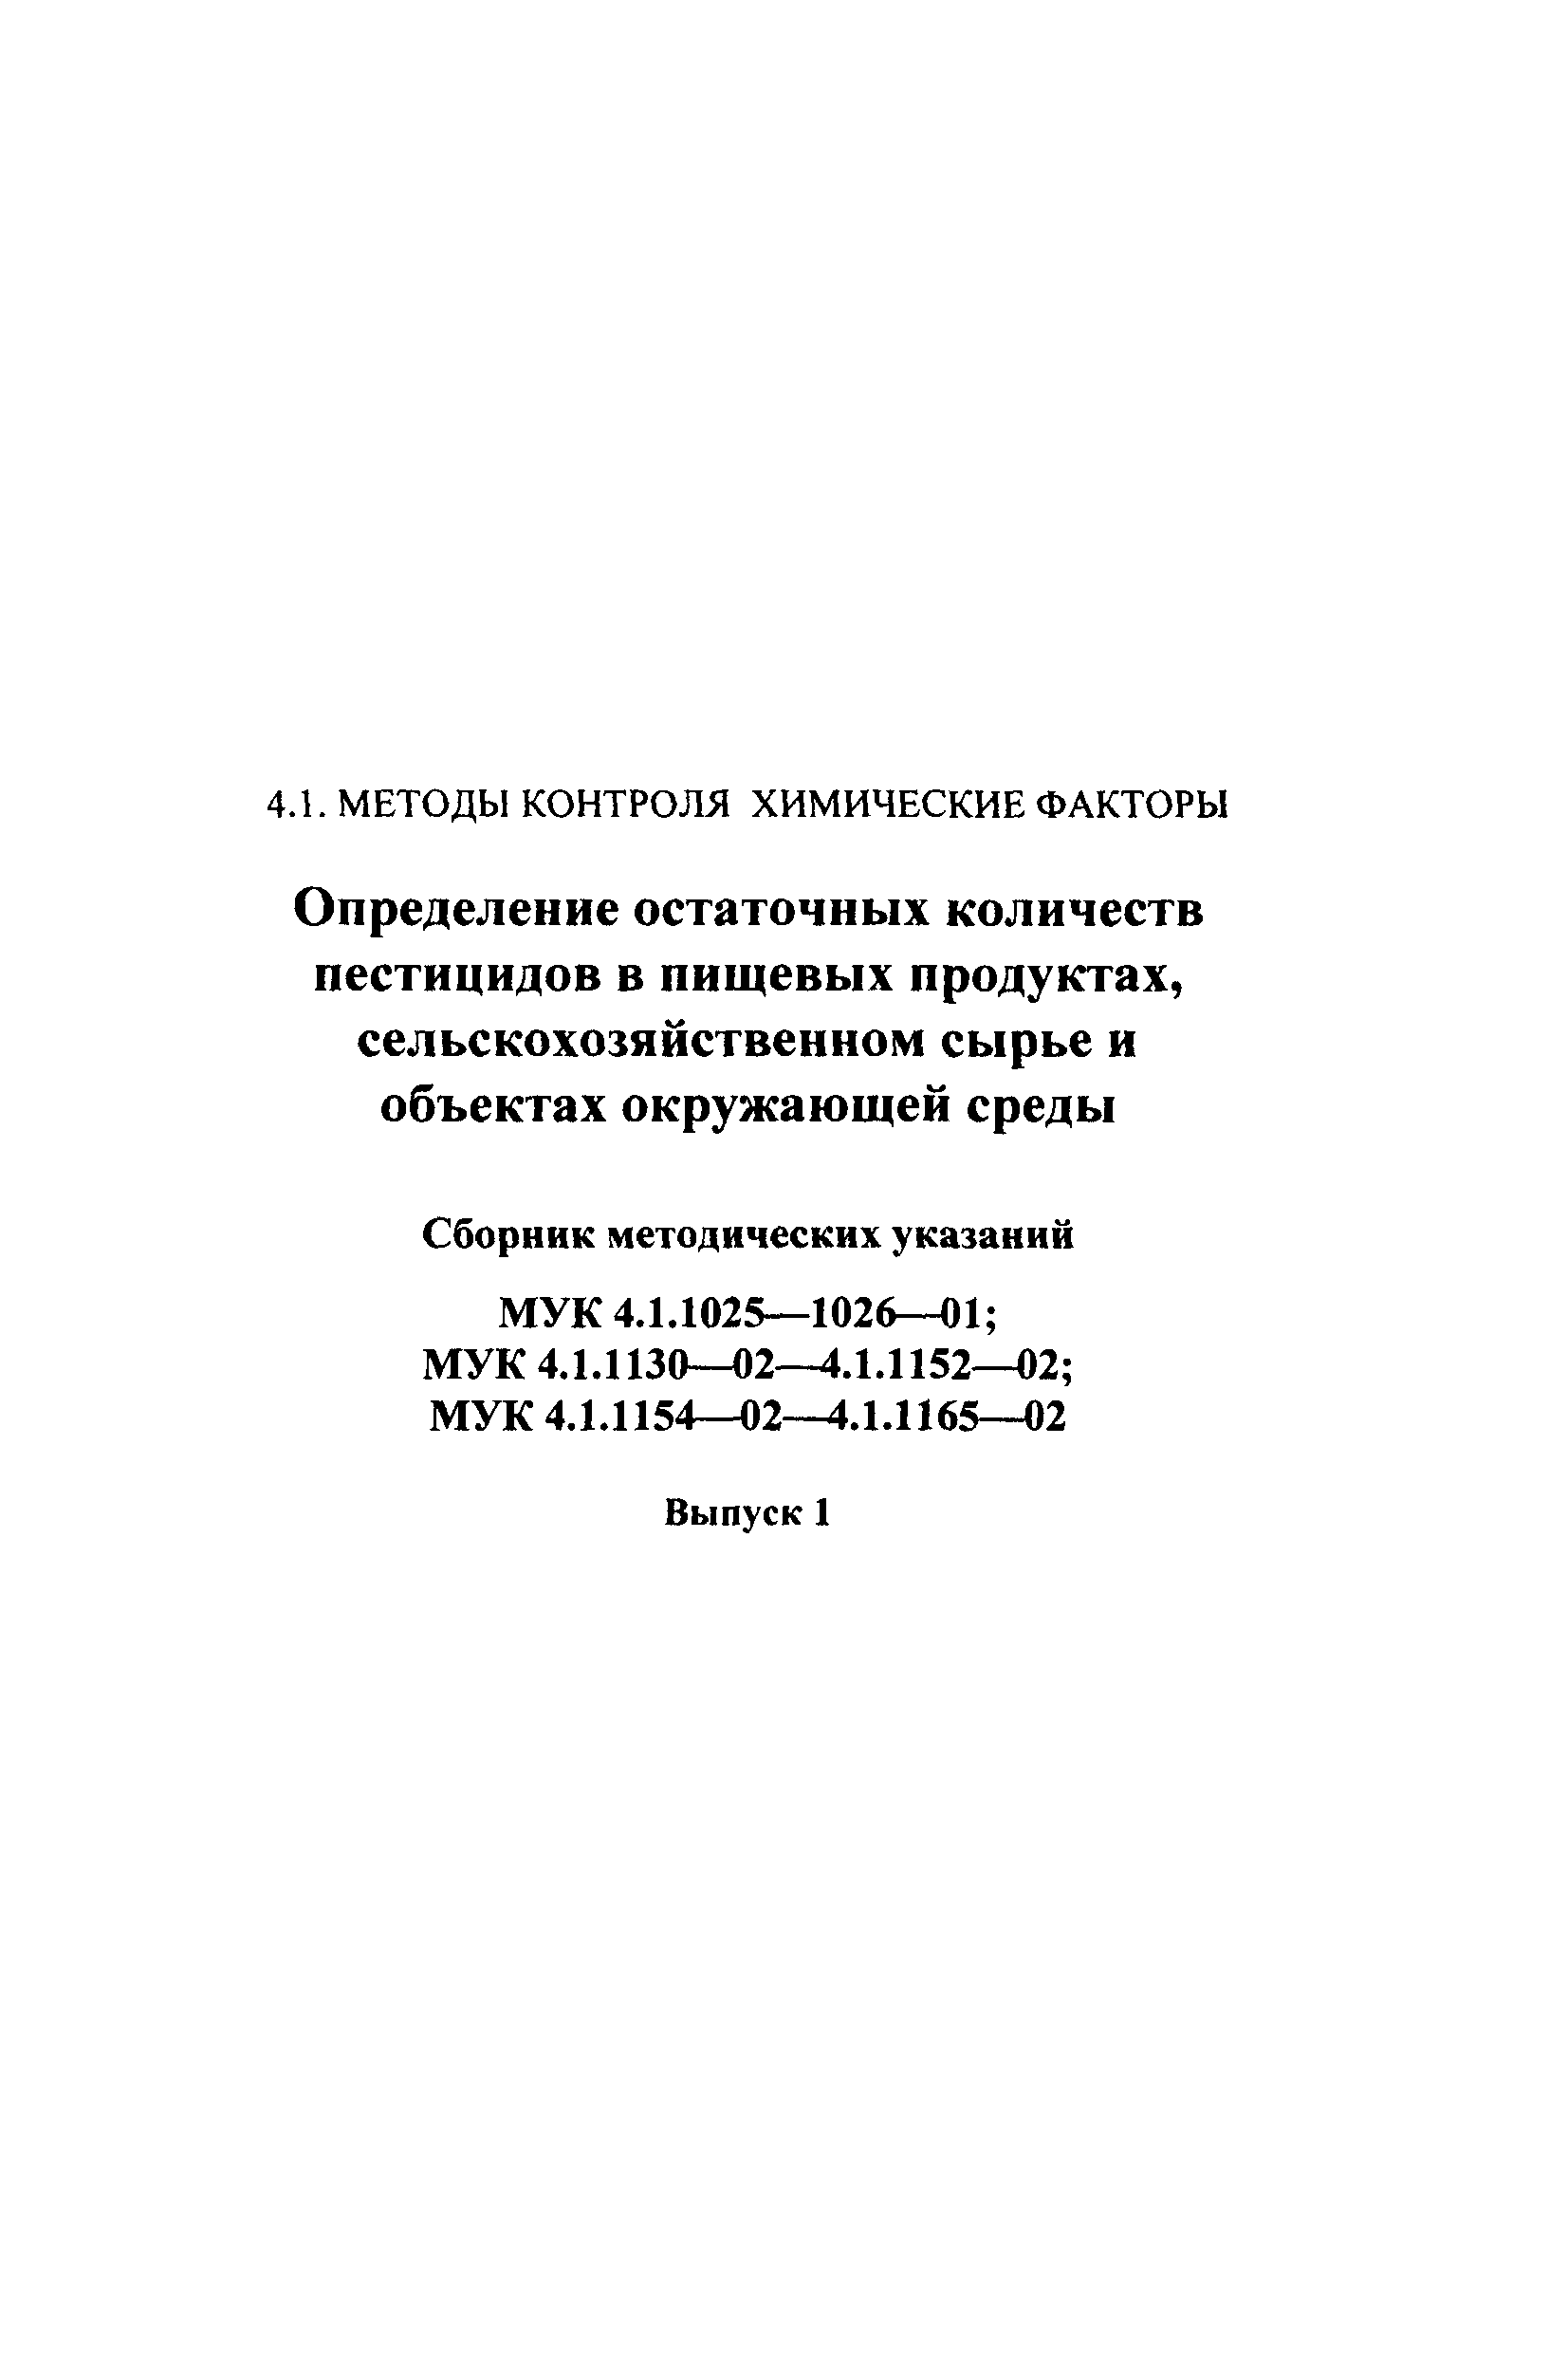 МУК 4.1.1135-02